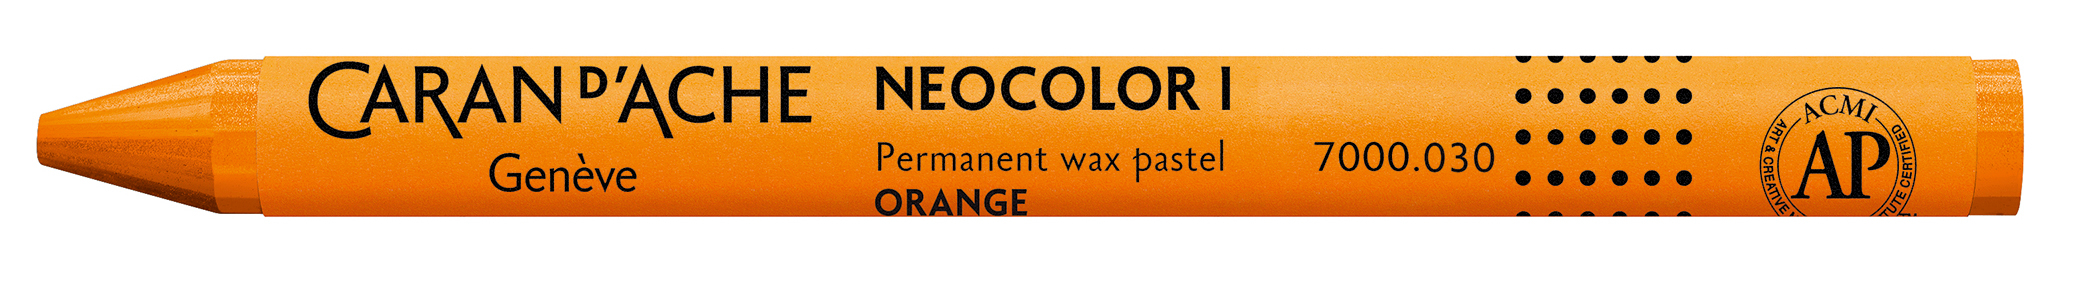 CARAN D'ACHE Crayons de cire Neocolor 1 7000.030 orange